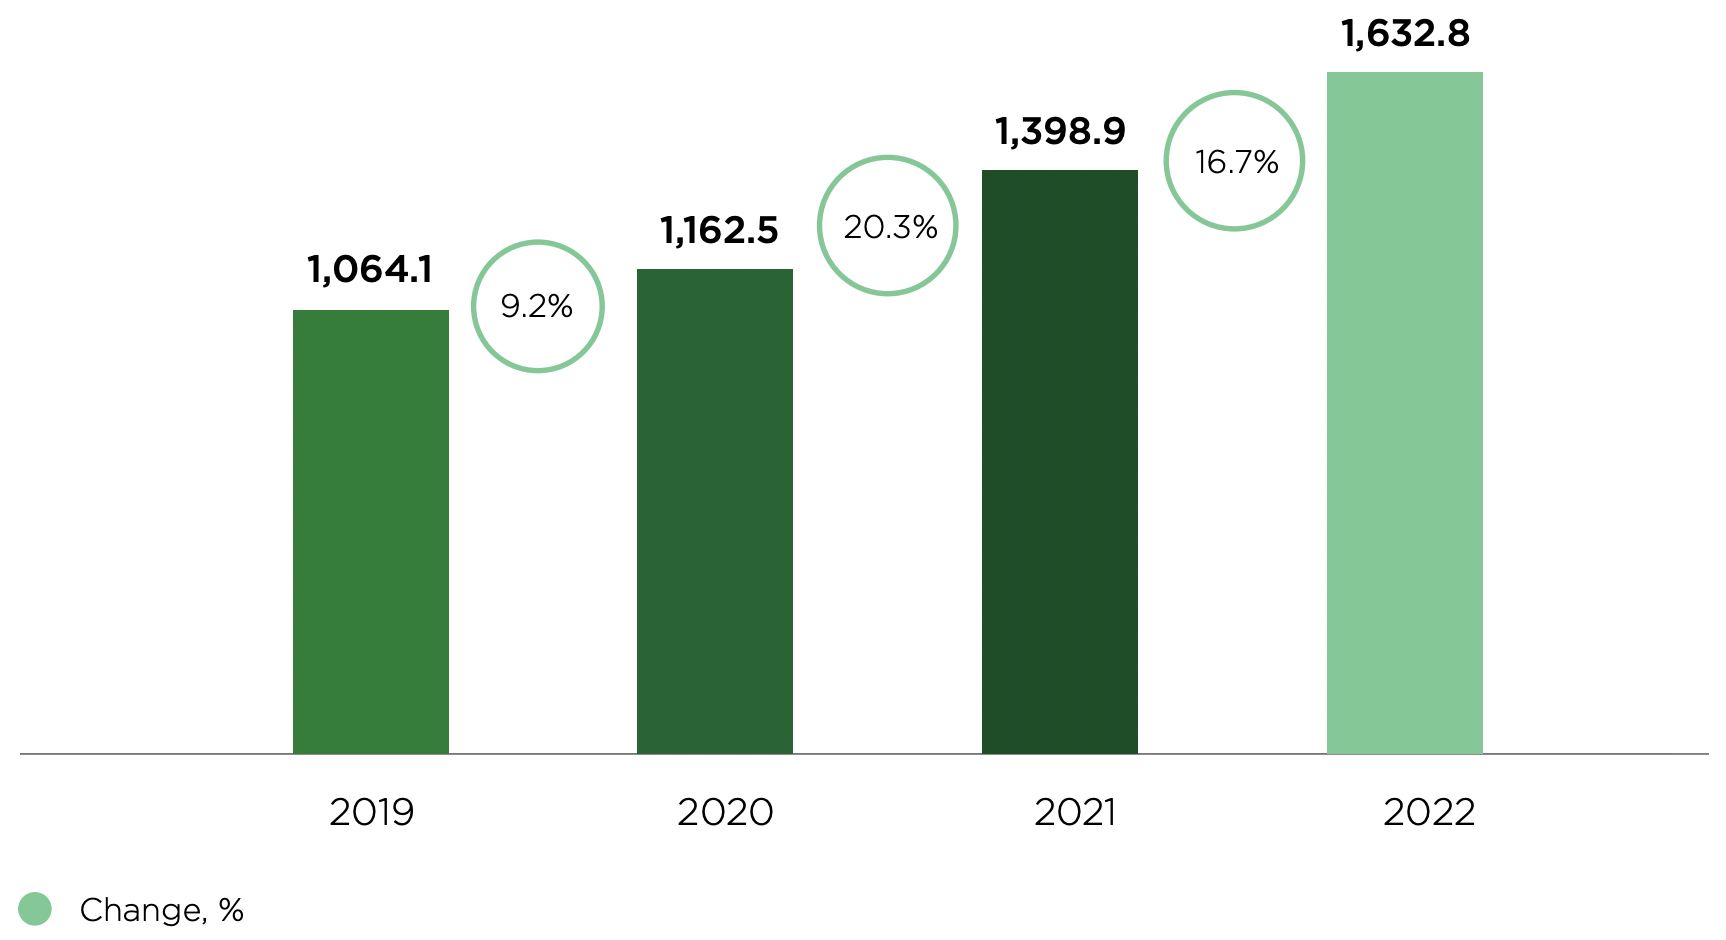 Mehiläinen's revenue between 2019-2021. Revenue in 2019: 1,064.1 EUR million, 2020: 1,162.5 EUR million, 2021: 1,398.5 EUR million and 2022: 1,623.8 million.